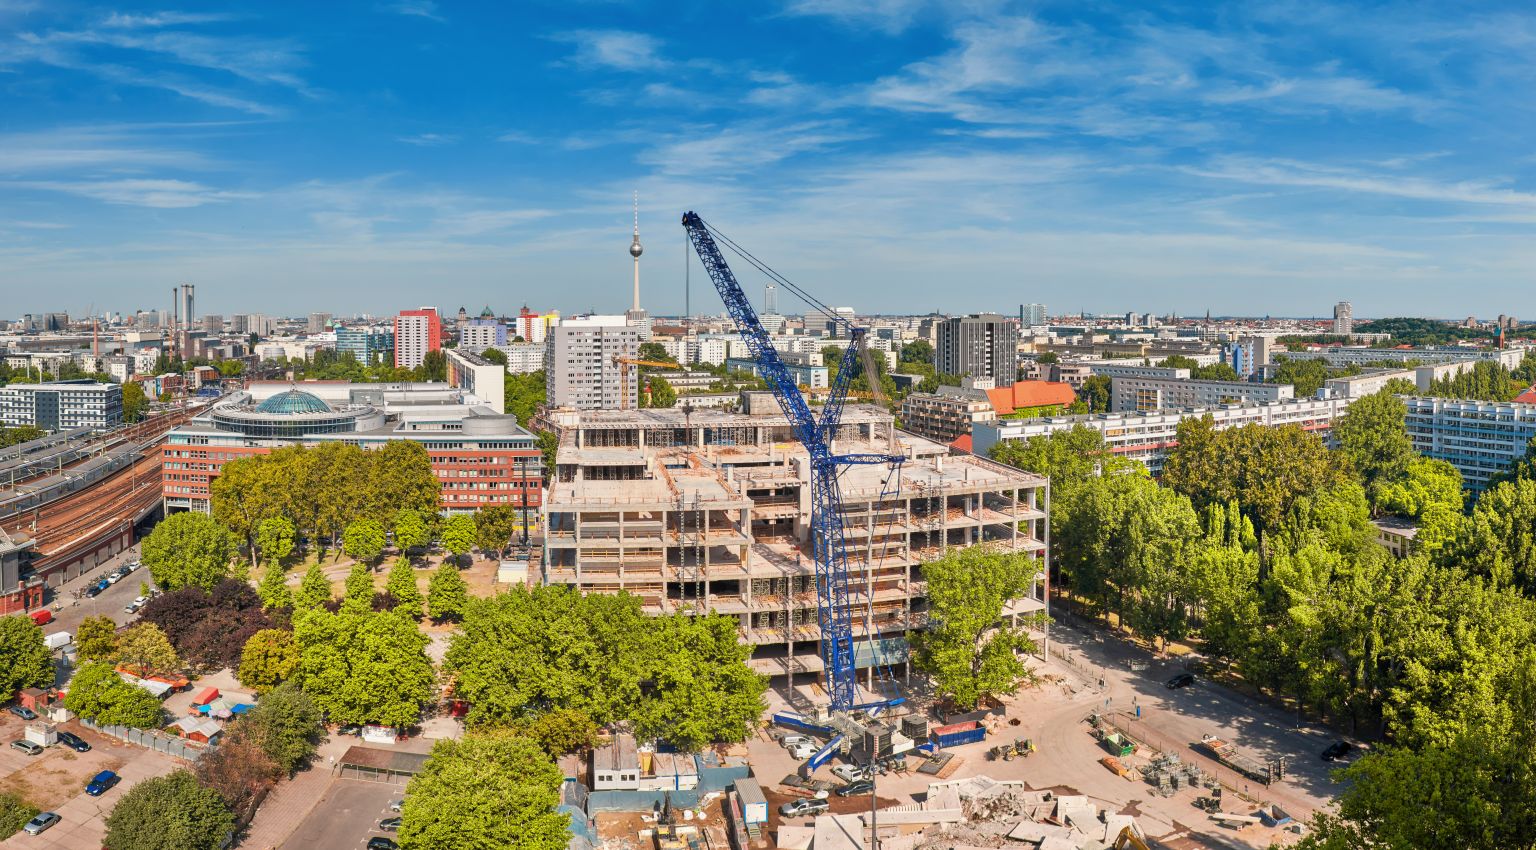 Immobilienexperten warnen vor Wohnbaukrise in Deutschland